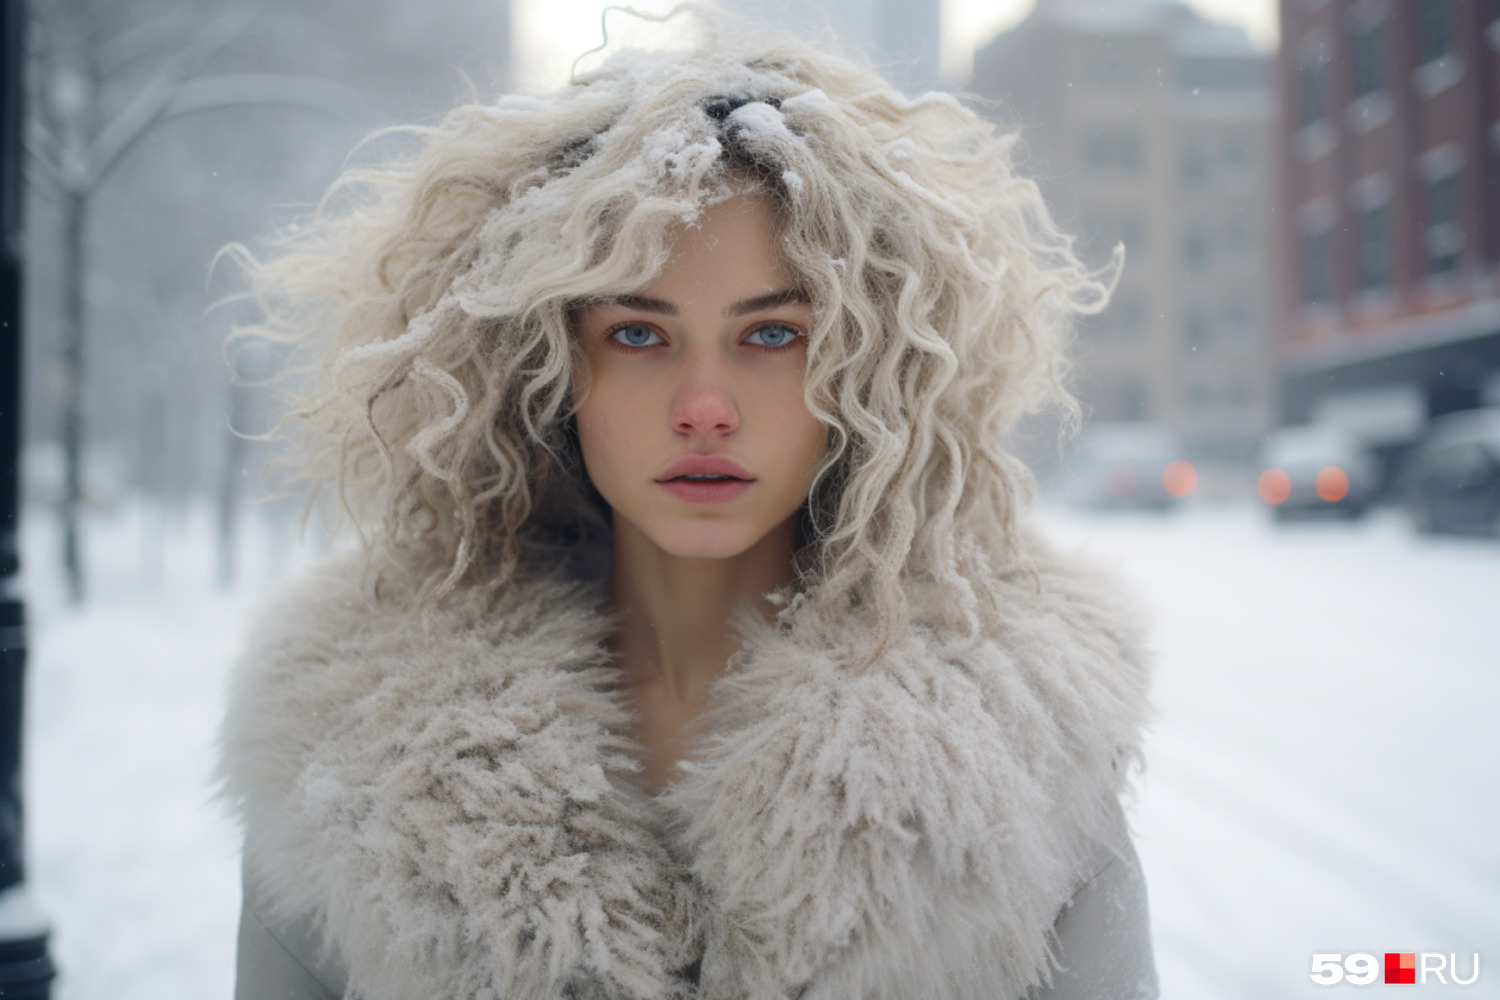 Какие можно дать советы, чтобы безболезненно нашим волосам пережить зиму?